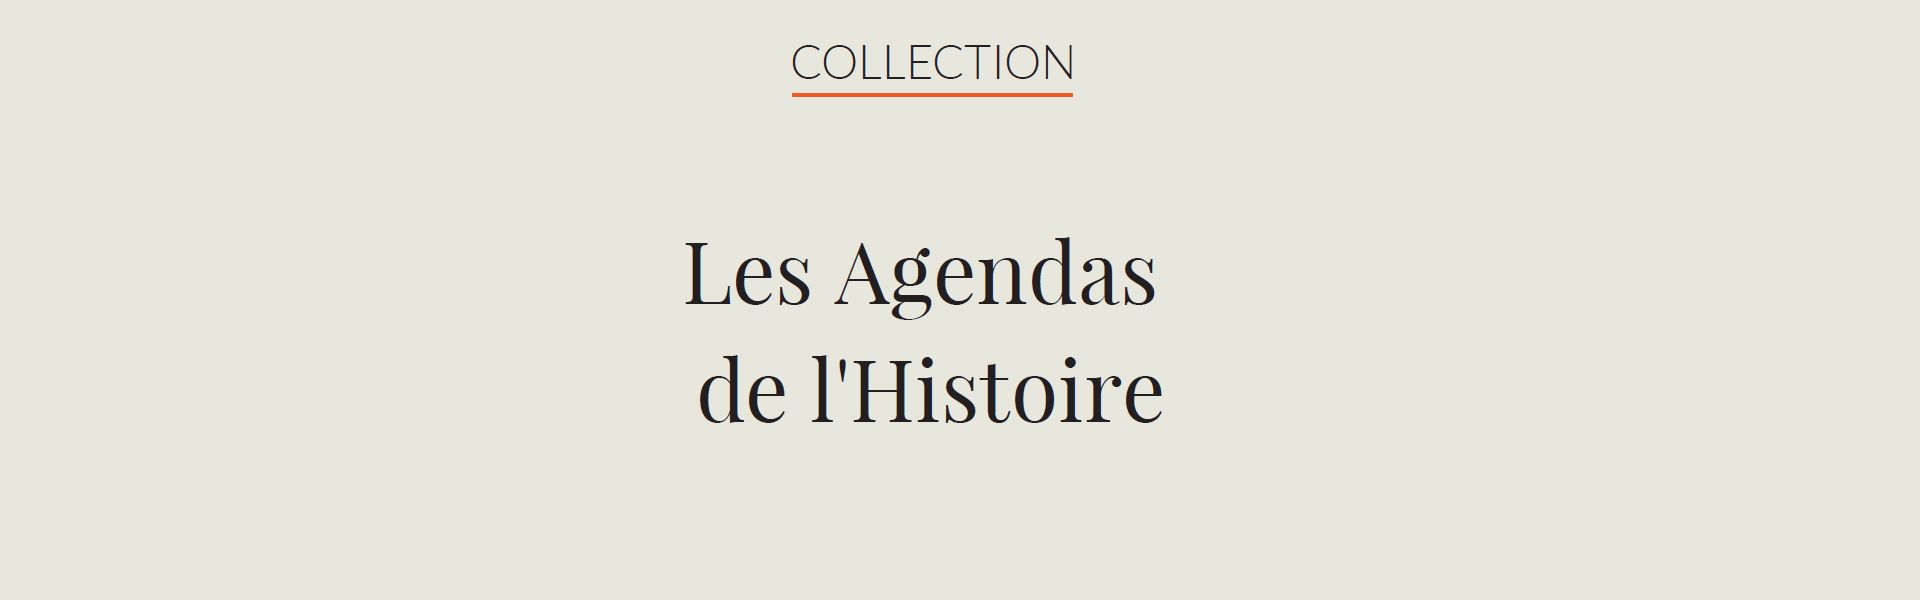 Collection Agendas de l'Histoire